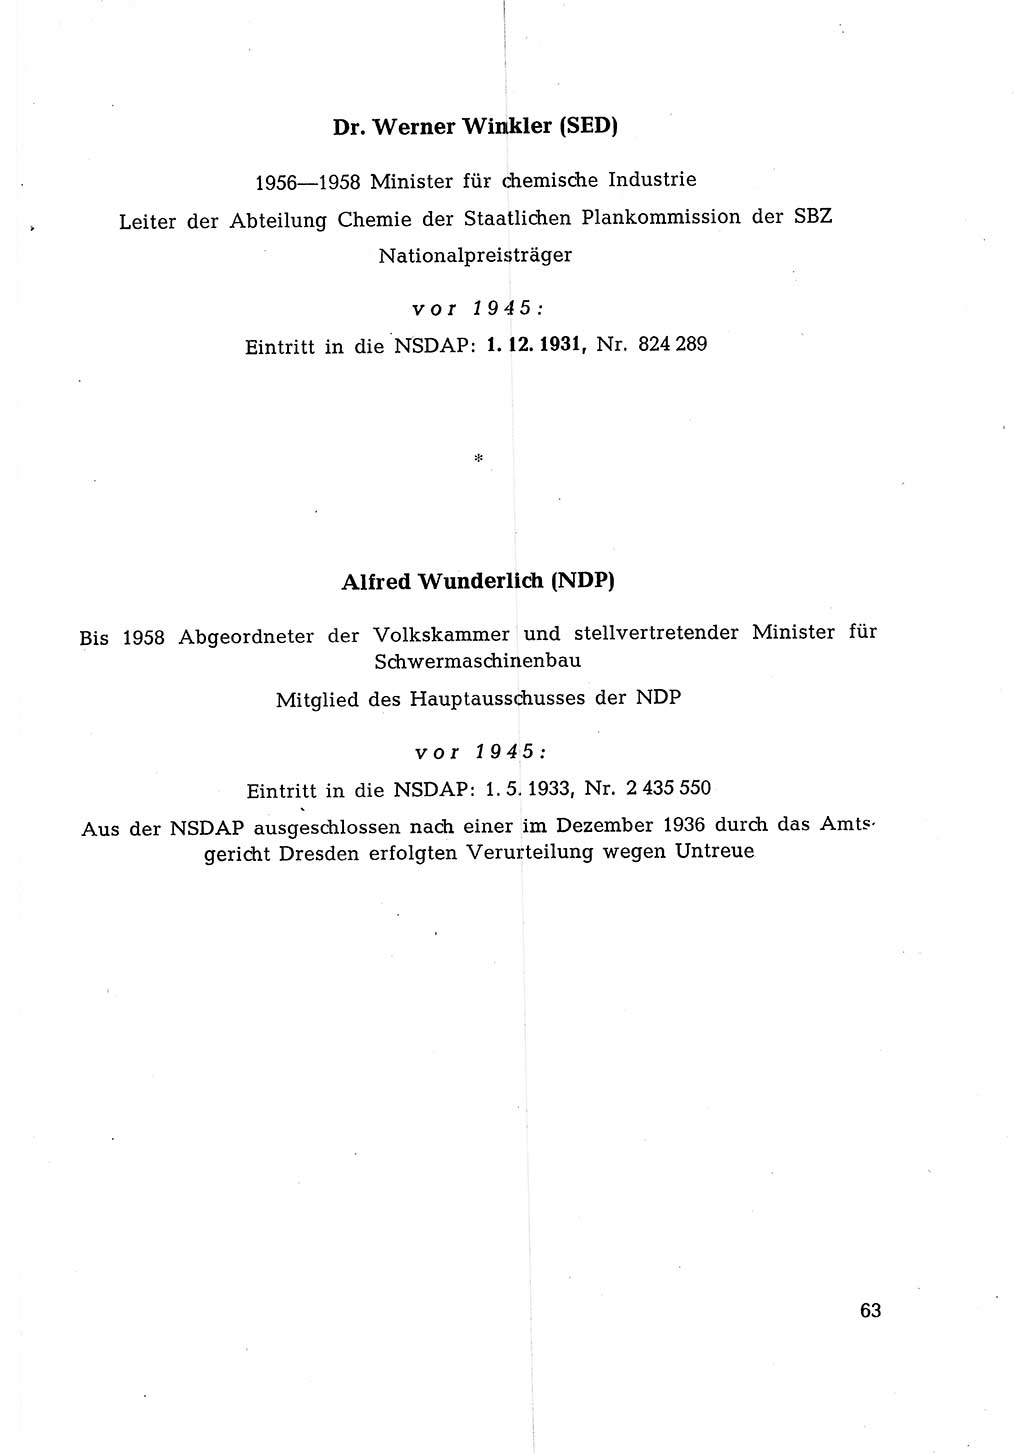 Ehemalige Nationalsozialisten in Pankows Diensten [Deutsche Demokratische Republik (DDR)] 1965, Seite 63 (Ehem. Nat.-Soz. DDR 1965, S. 63)